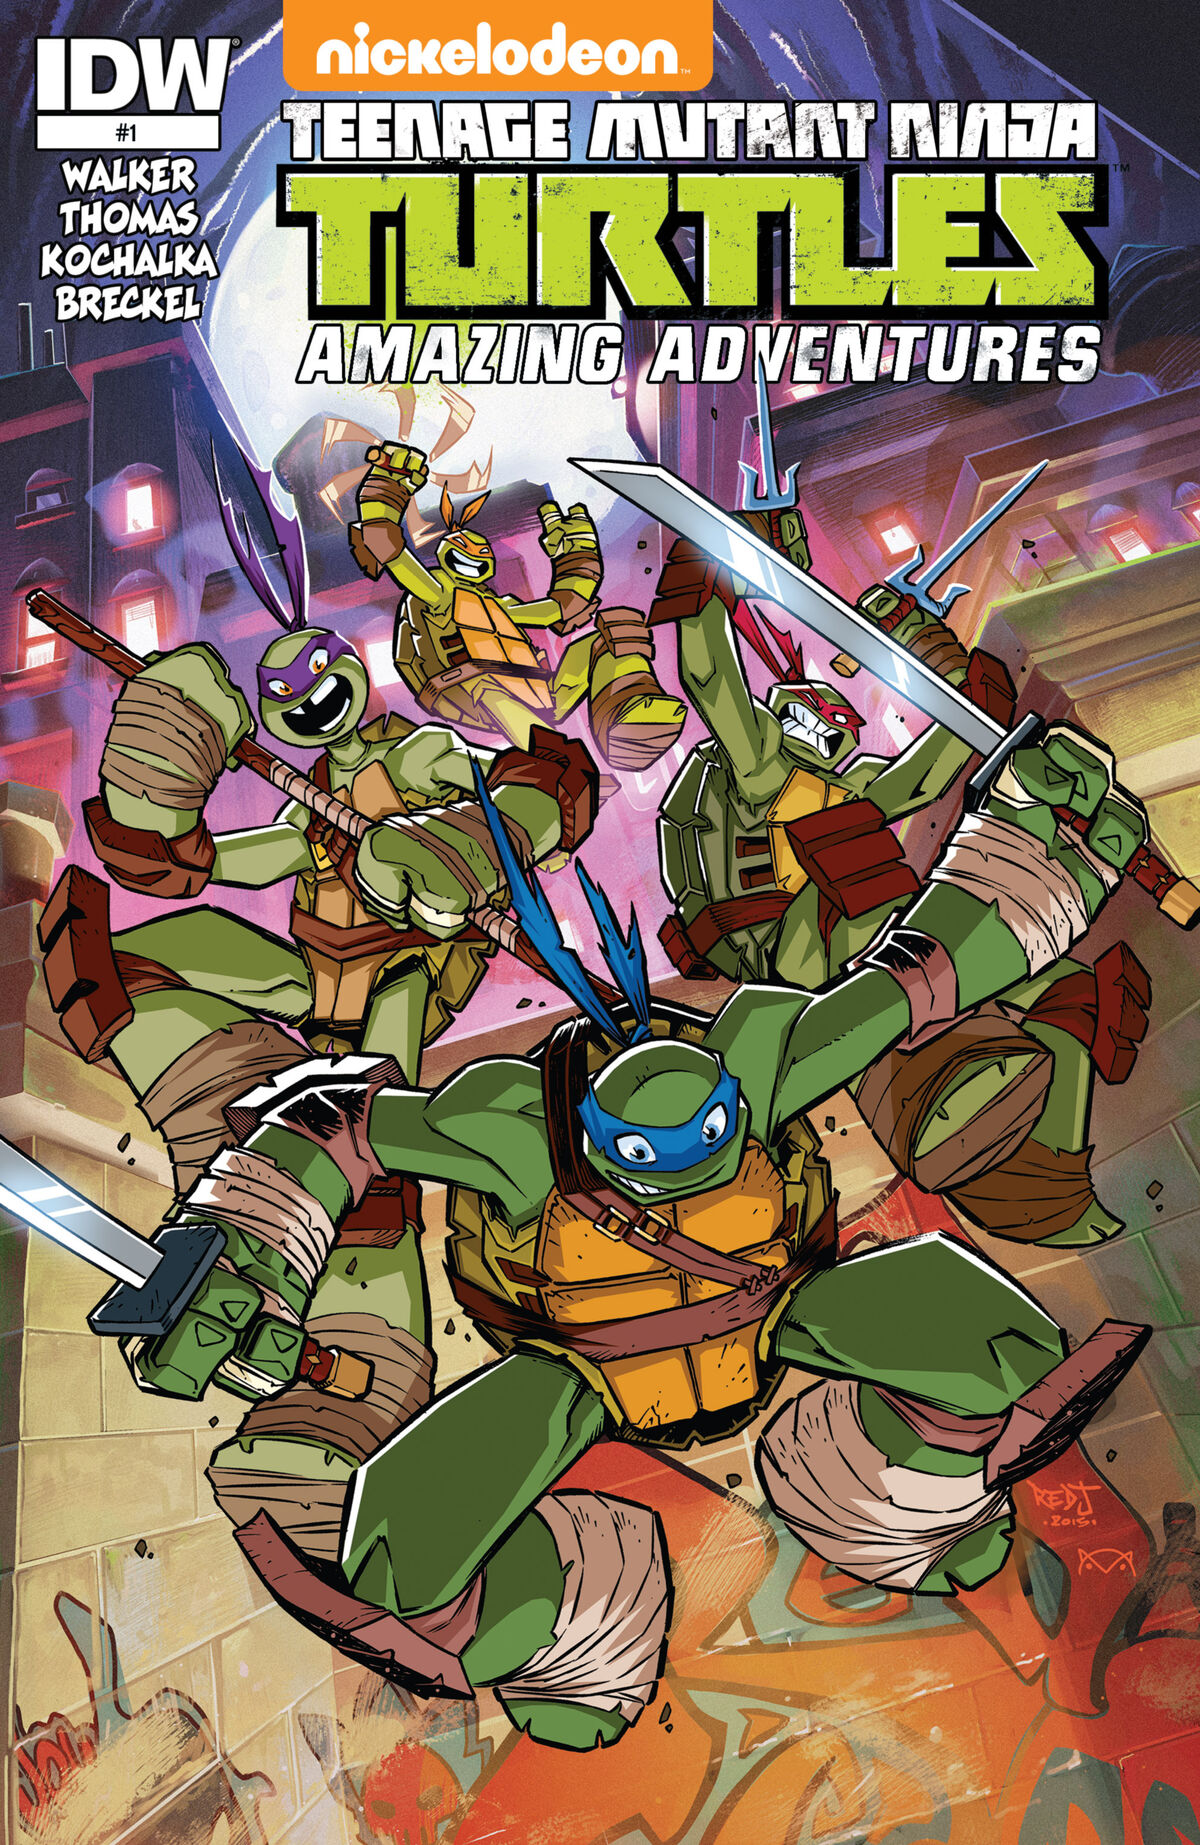 Batman/Teenage Mutant Ninja Turtles Adventures - Wikipedia